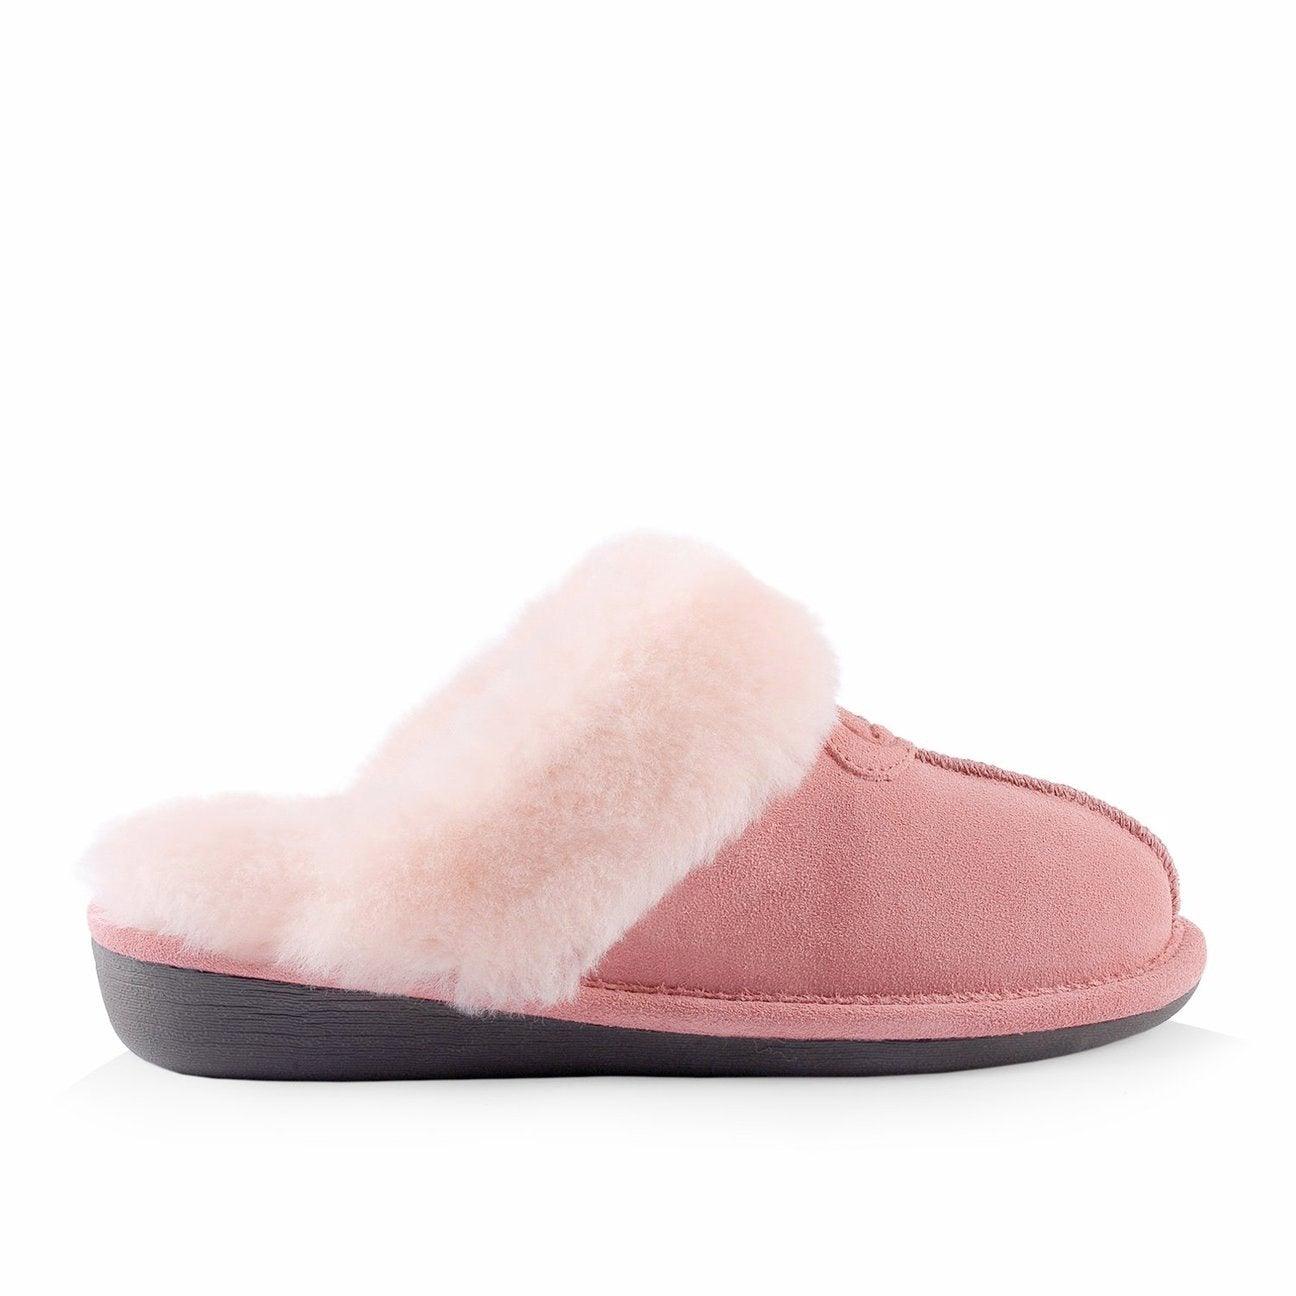 Women's Becca Slippers - Sheepskin Lining in Pink